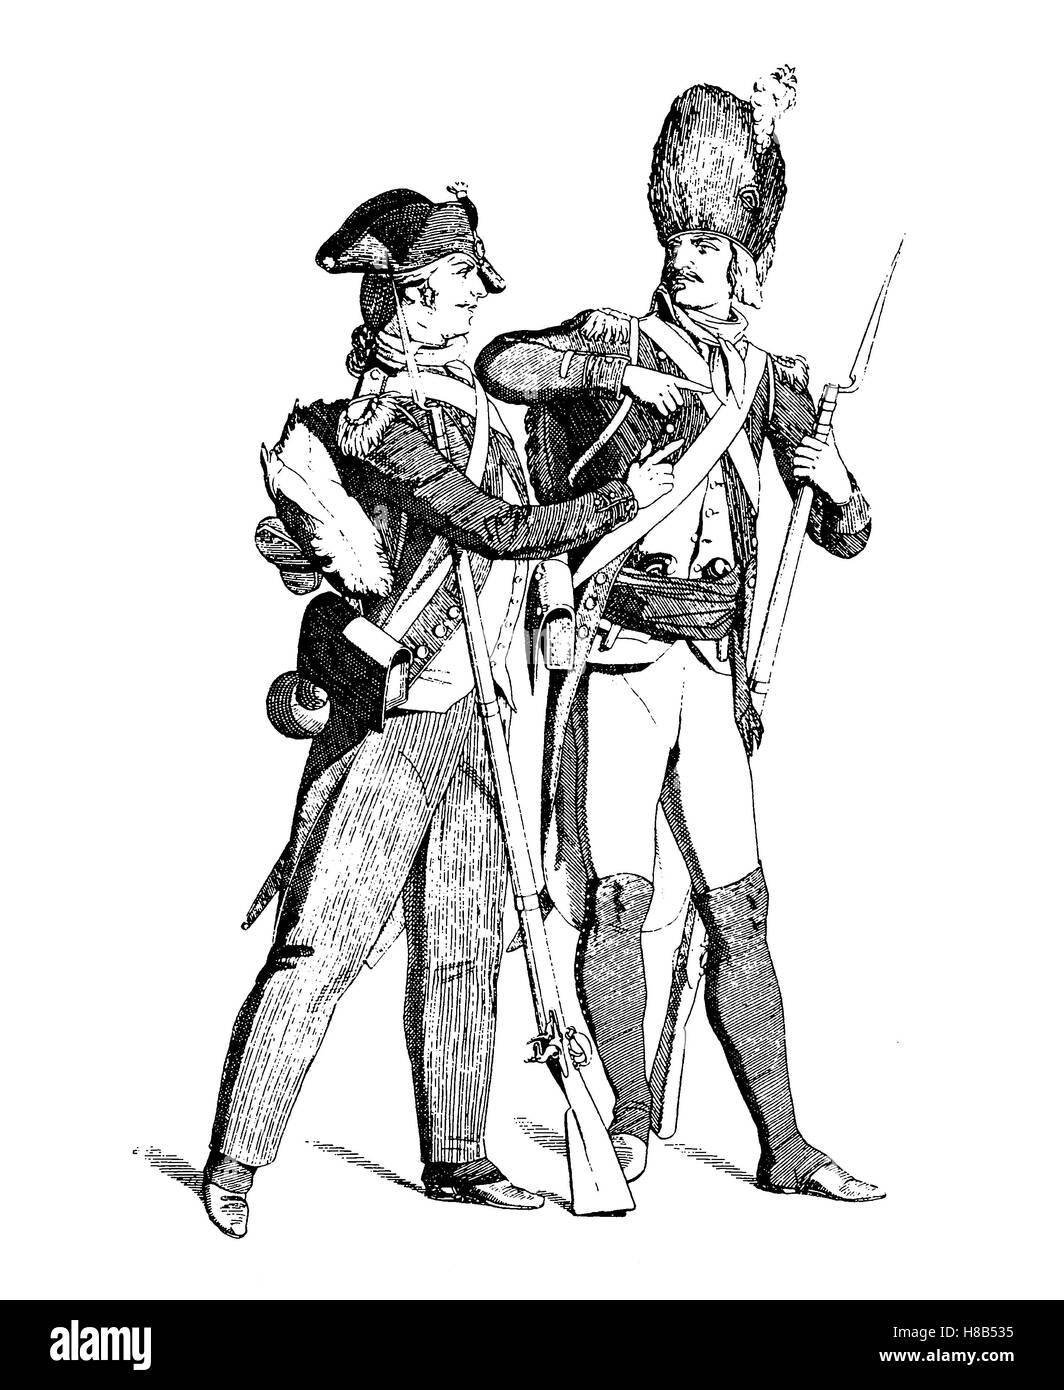 Les soldats de la République française, 1792 - 1799, histoire de la mode, des costumes story Banque D'Images